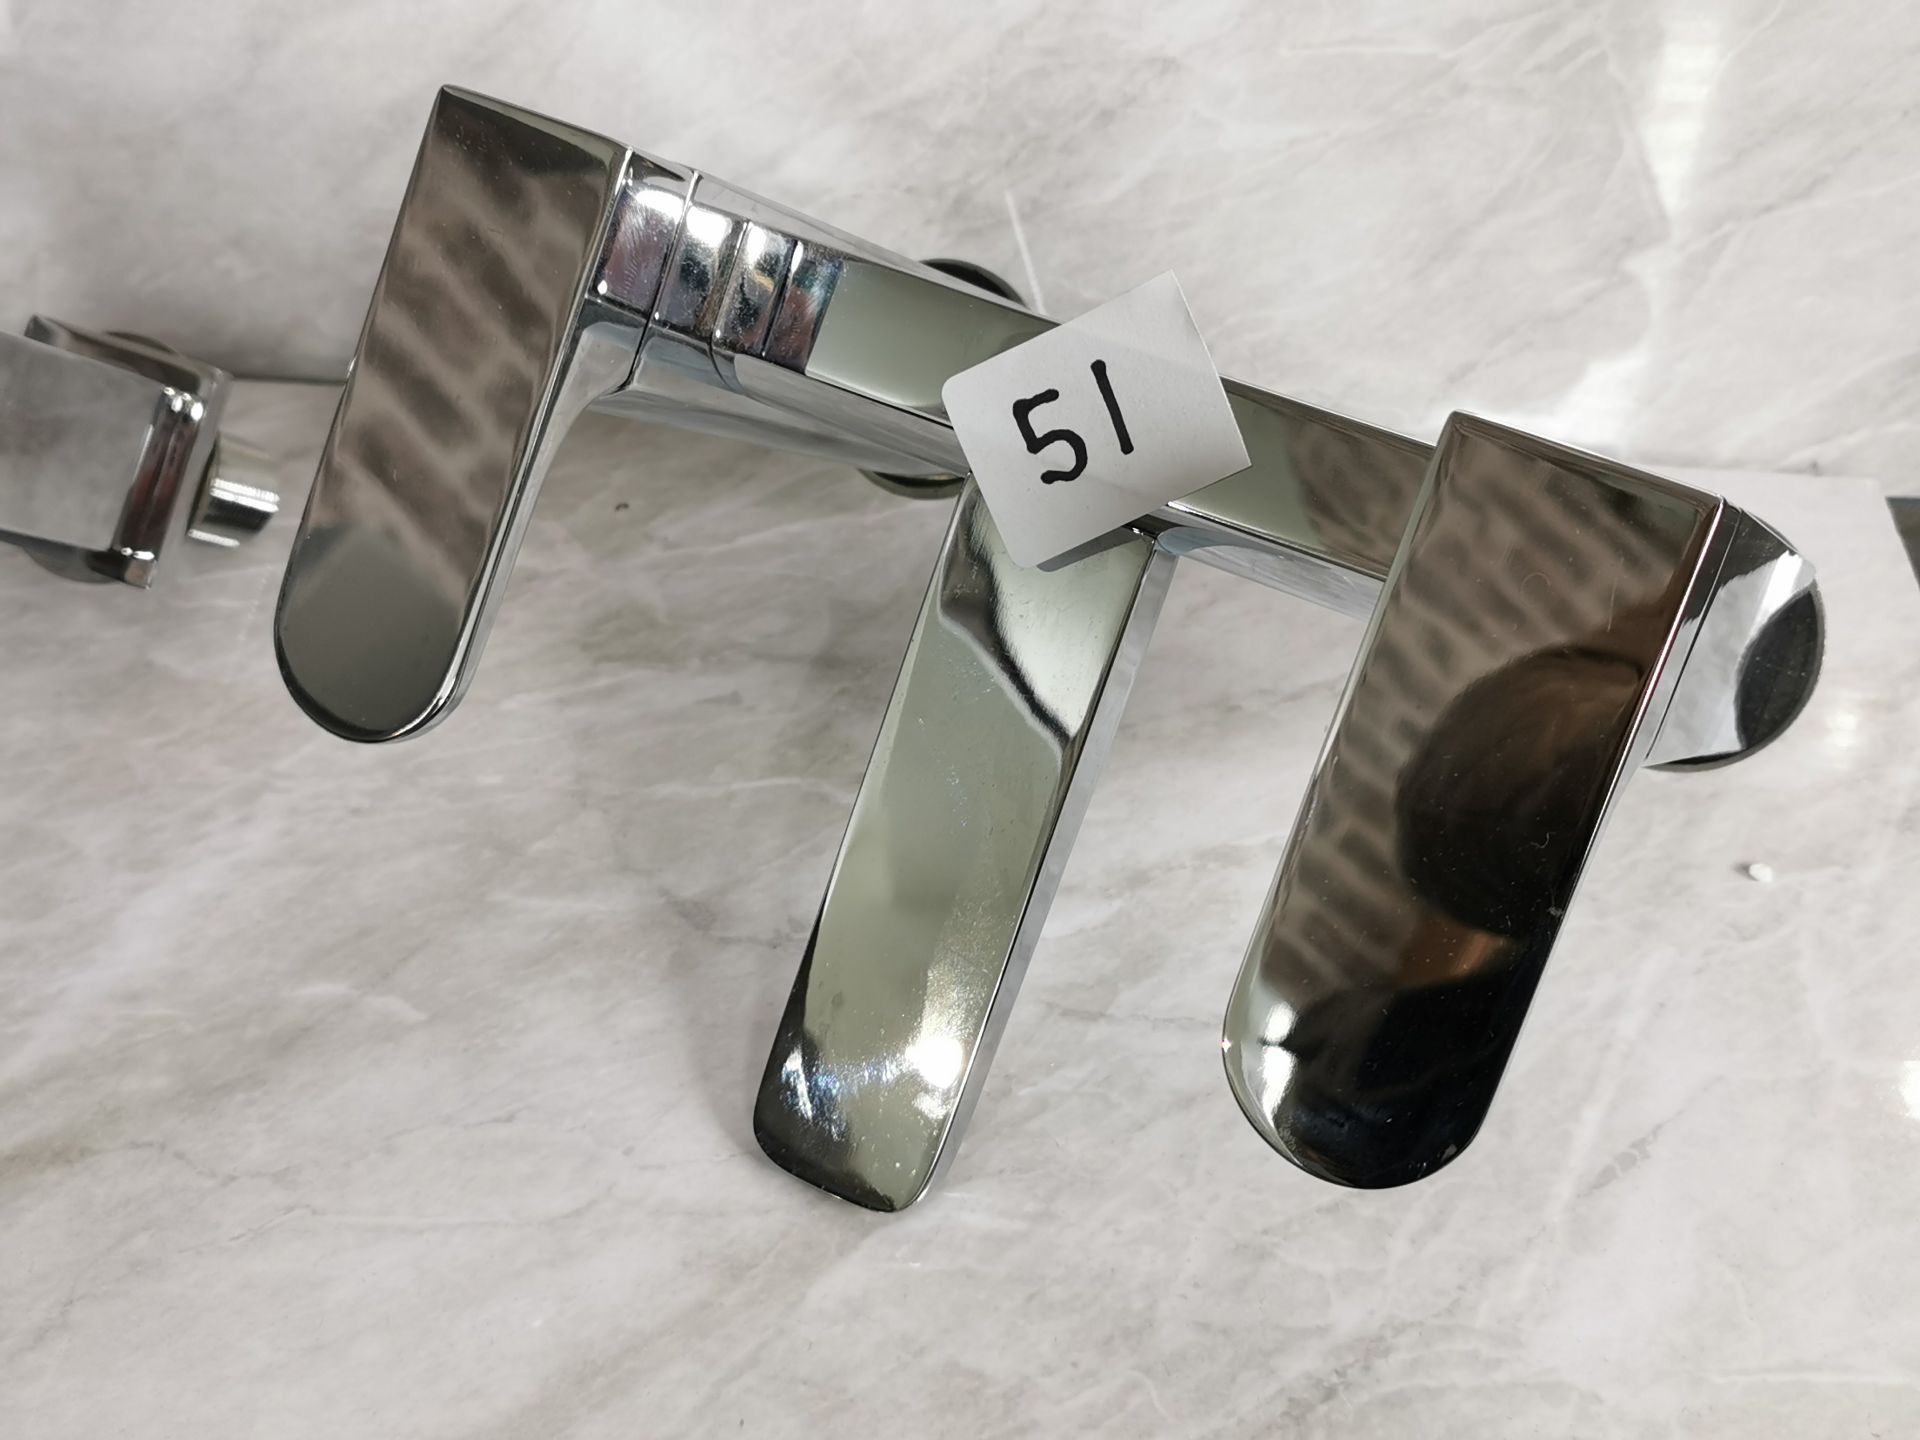 Luxury Designer Bath Filler Curved Tap Unit RRP £229 - Image 2 of 2